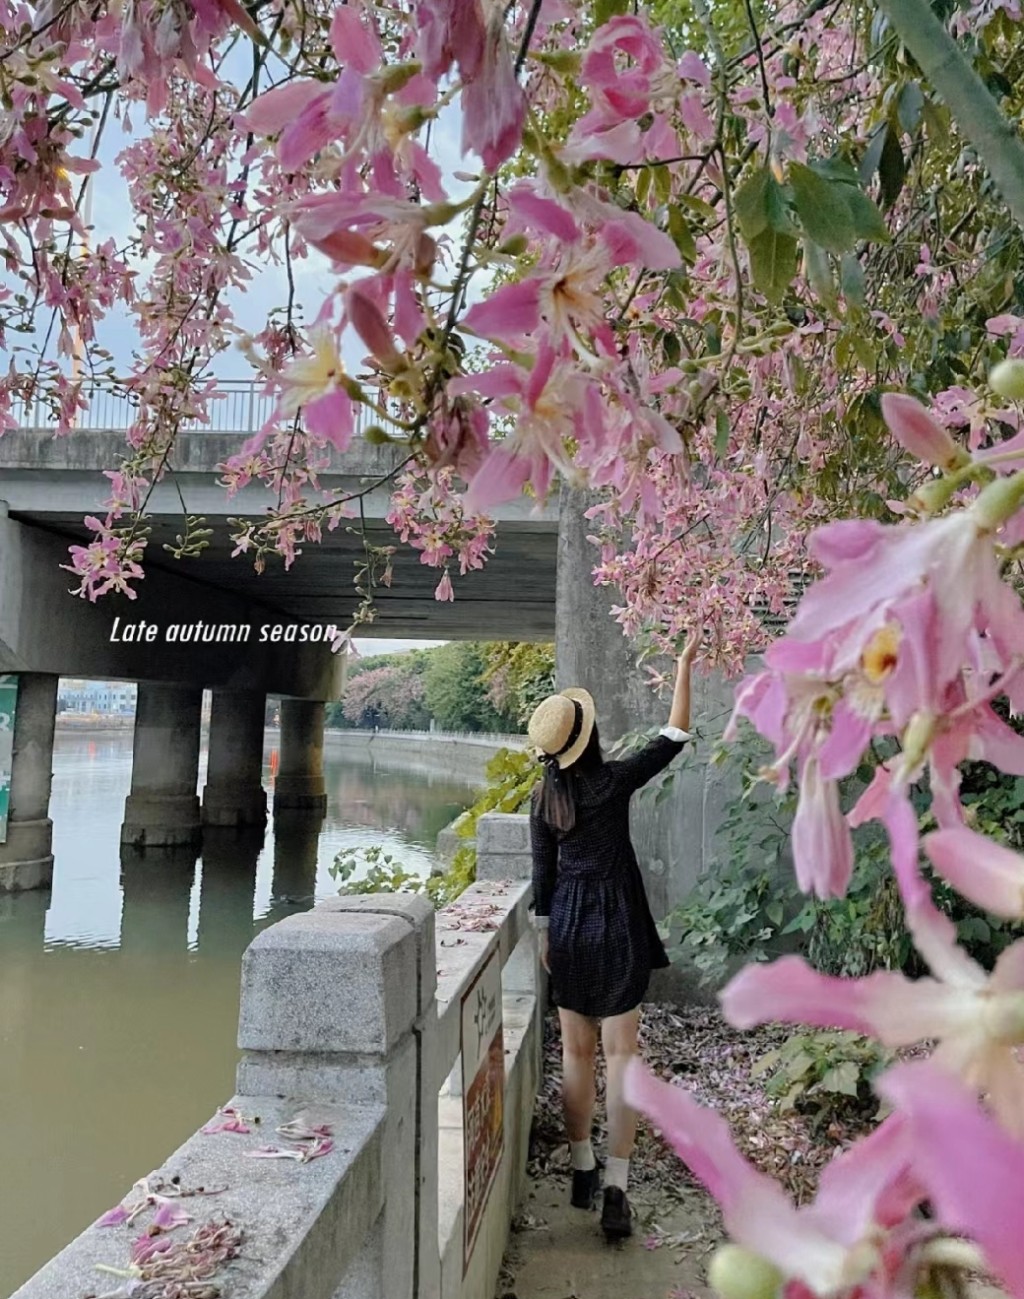 广州上步河畔异木棉正盛开。(图片来源：小红书@黄小檬)